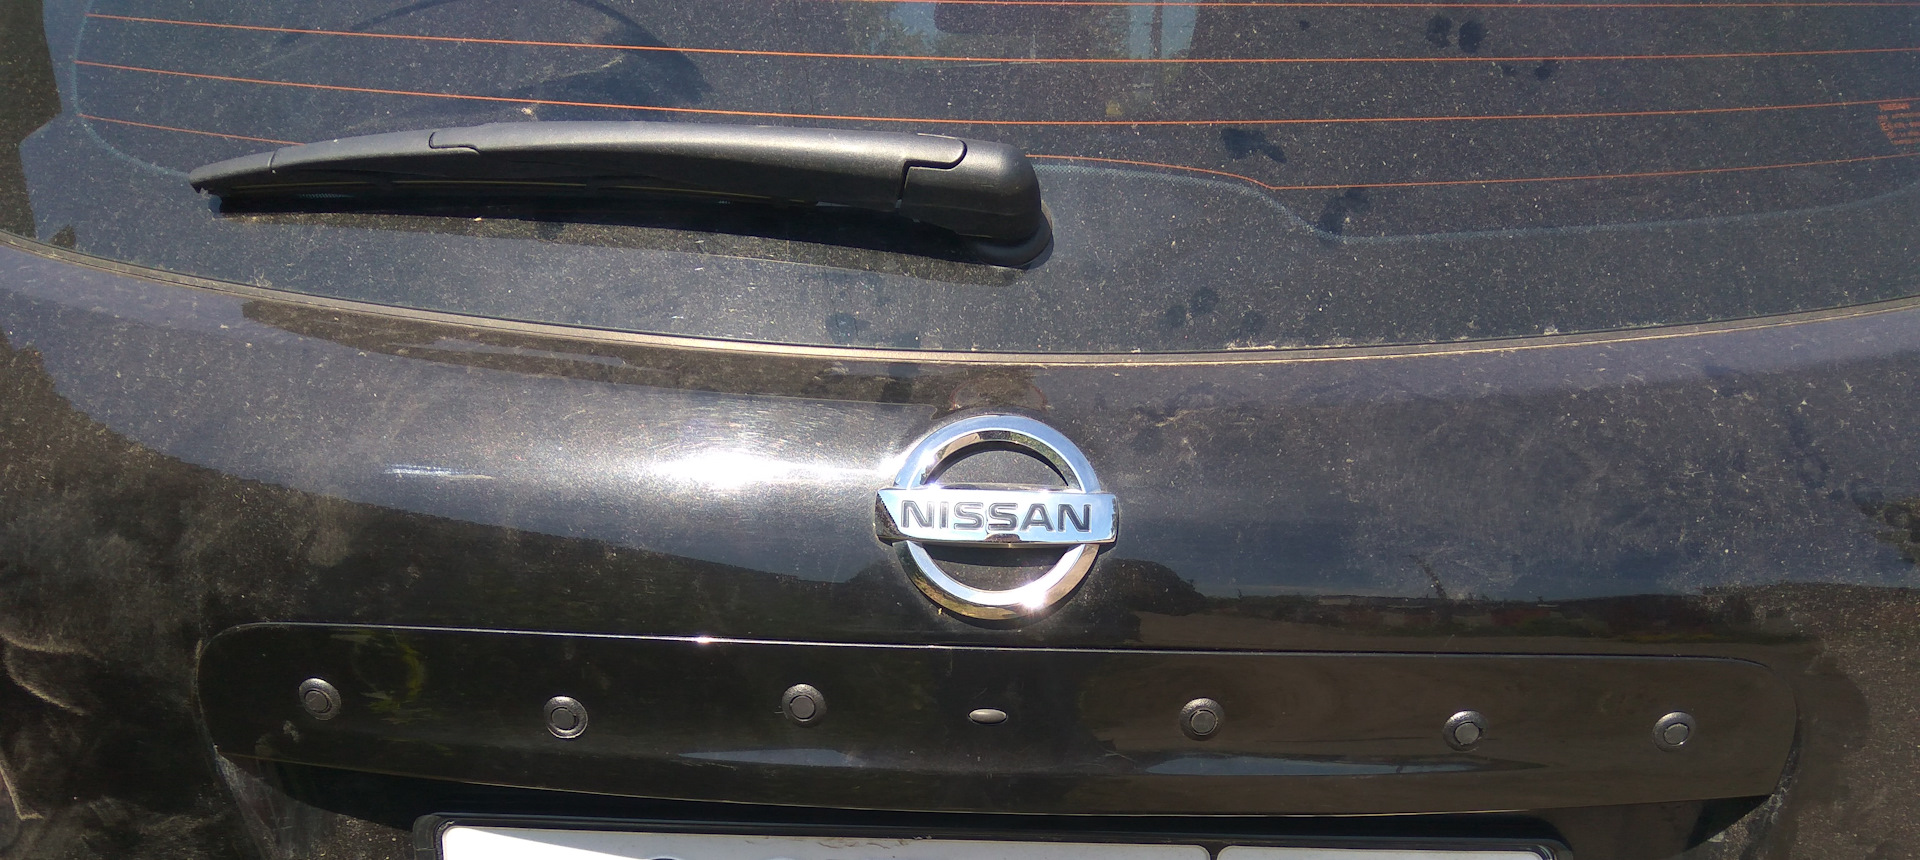 Накладка на заднюю дверь багажника. Ремкомплект ручки багажника Nissan Qashqai j10. Ремкомплект накладки крышки багажника Ниссан Кашкай j10. Накладка крышки багажника Nissan Qashqai j10. Ремкомплект накладки багажника Nissan Qashqai j10.